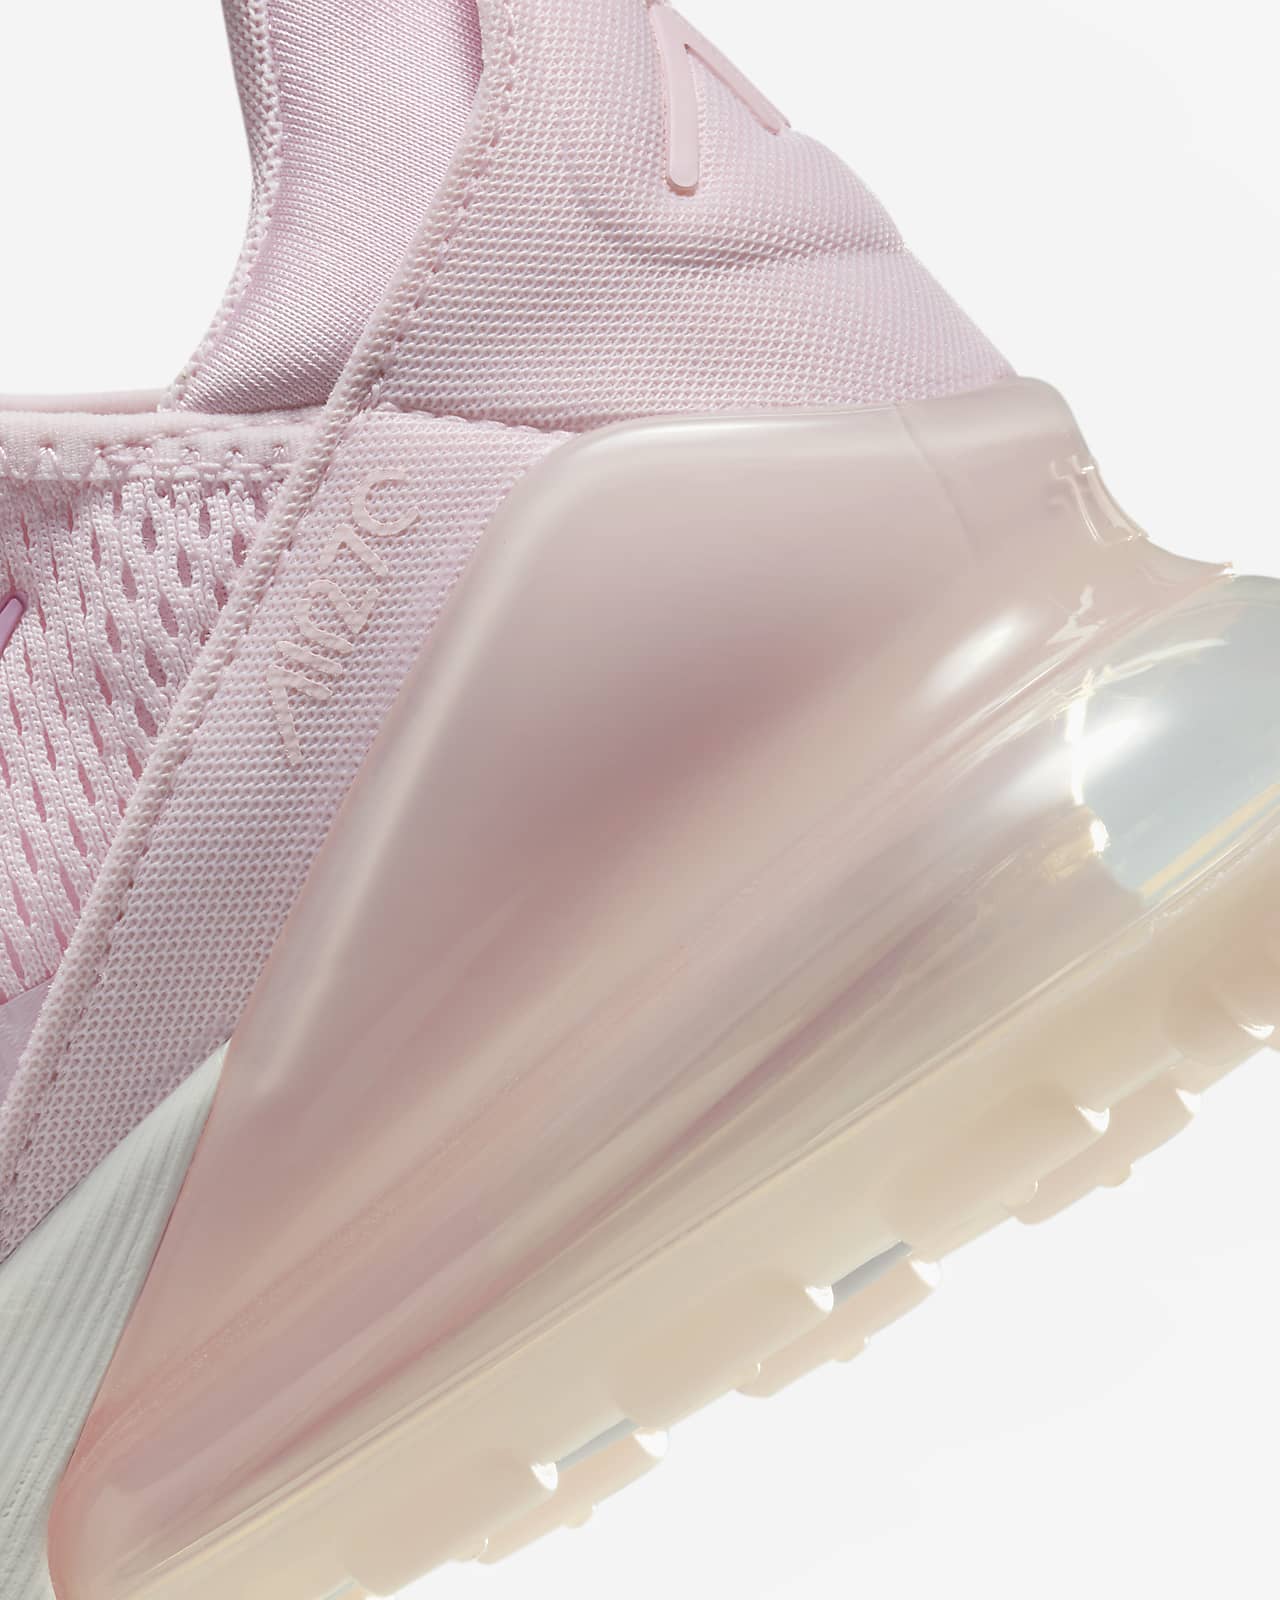 Zapatillas Mujer Nike Air Max 270 React Se Arctic Pink Urban